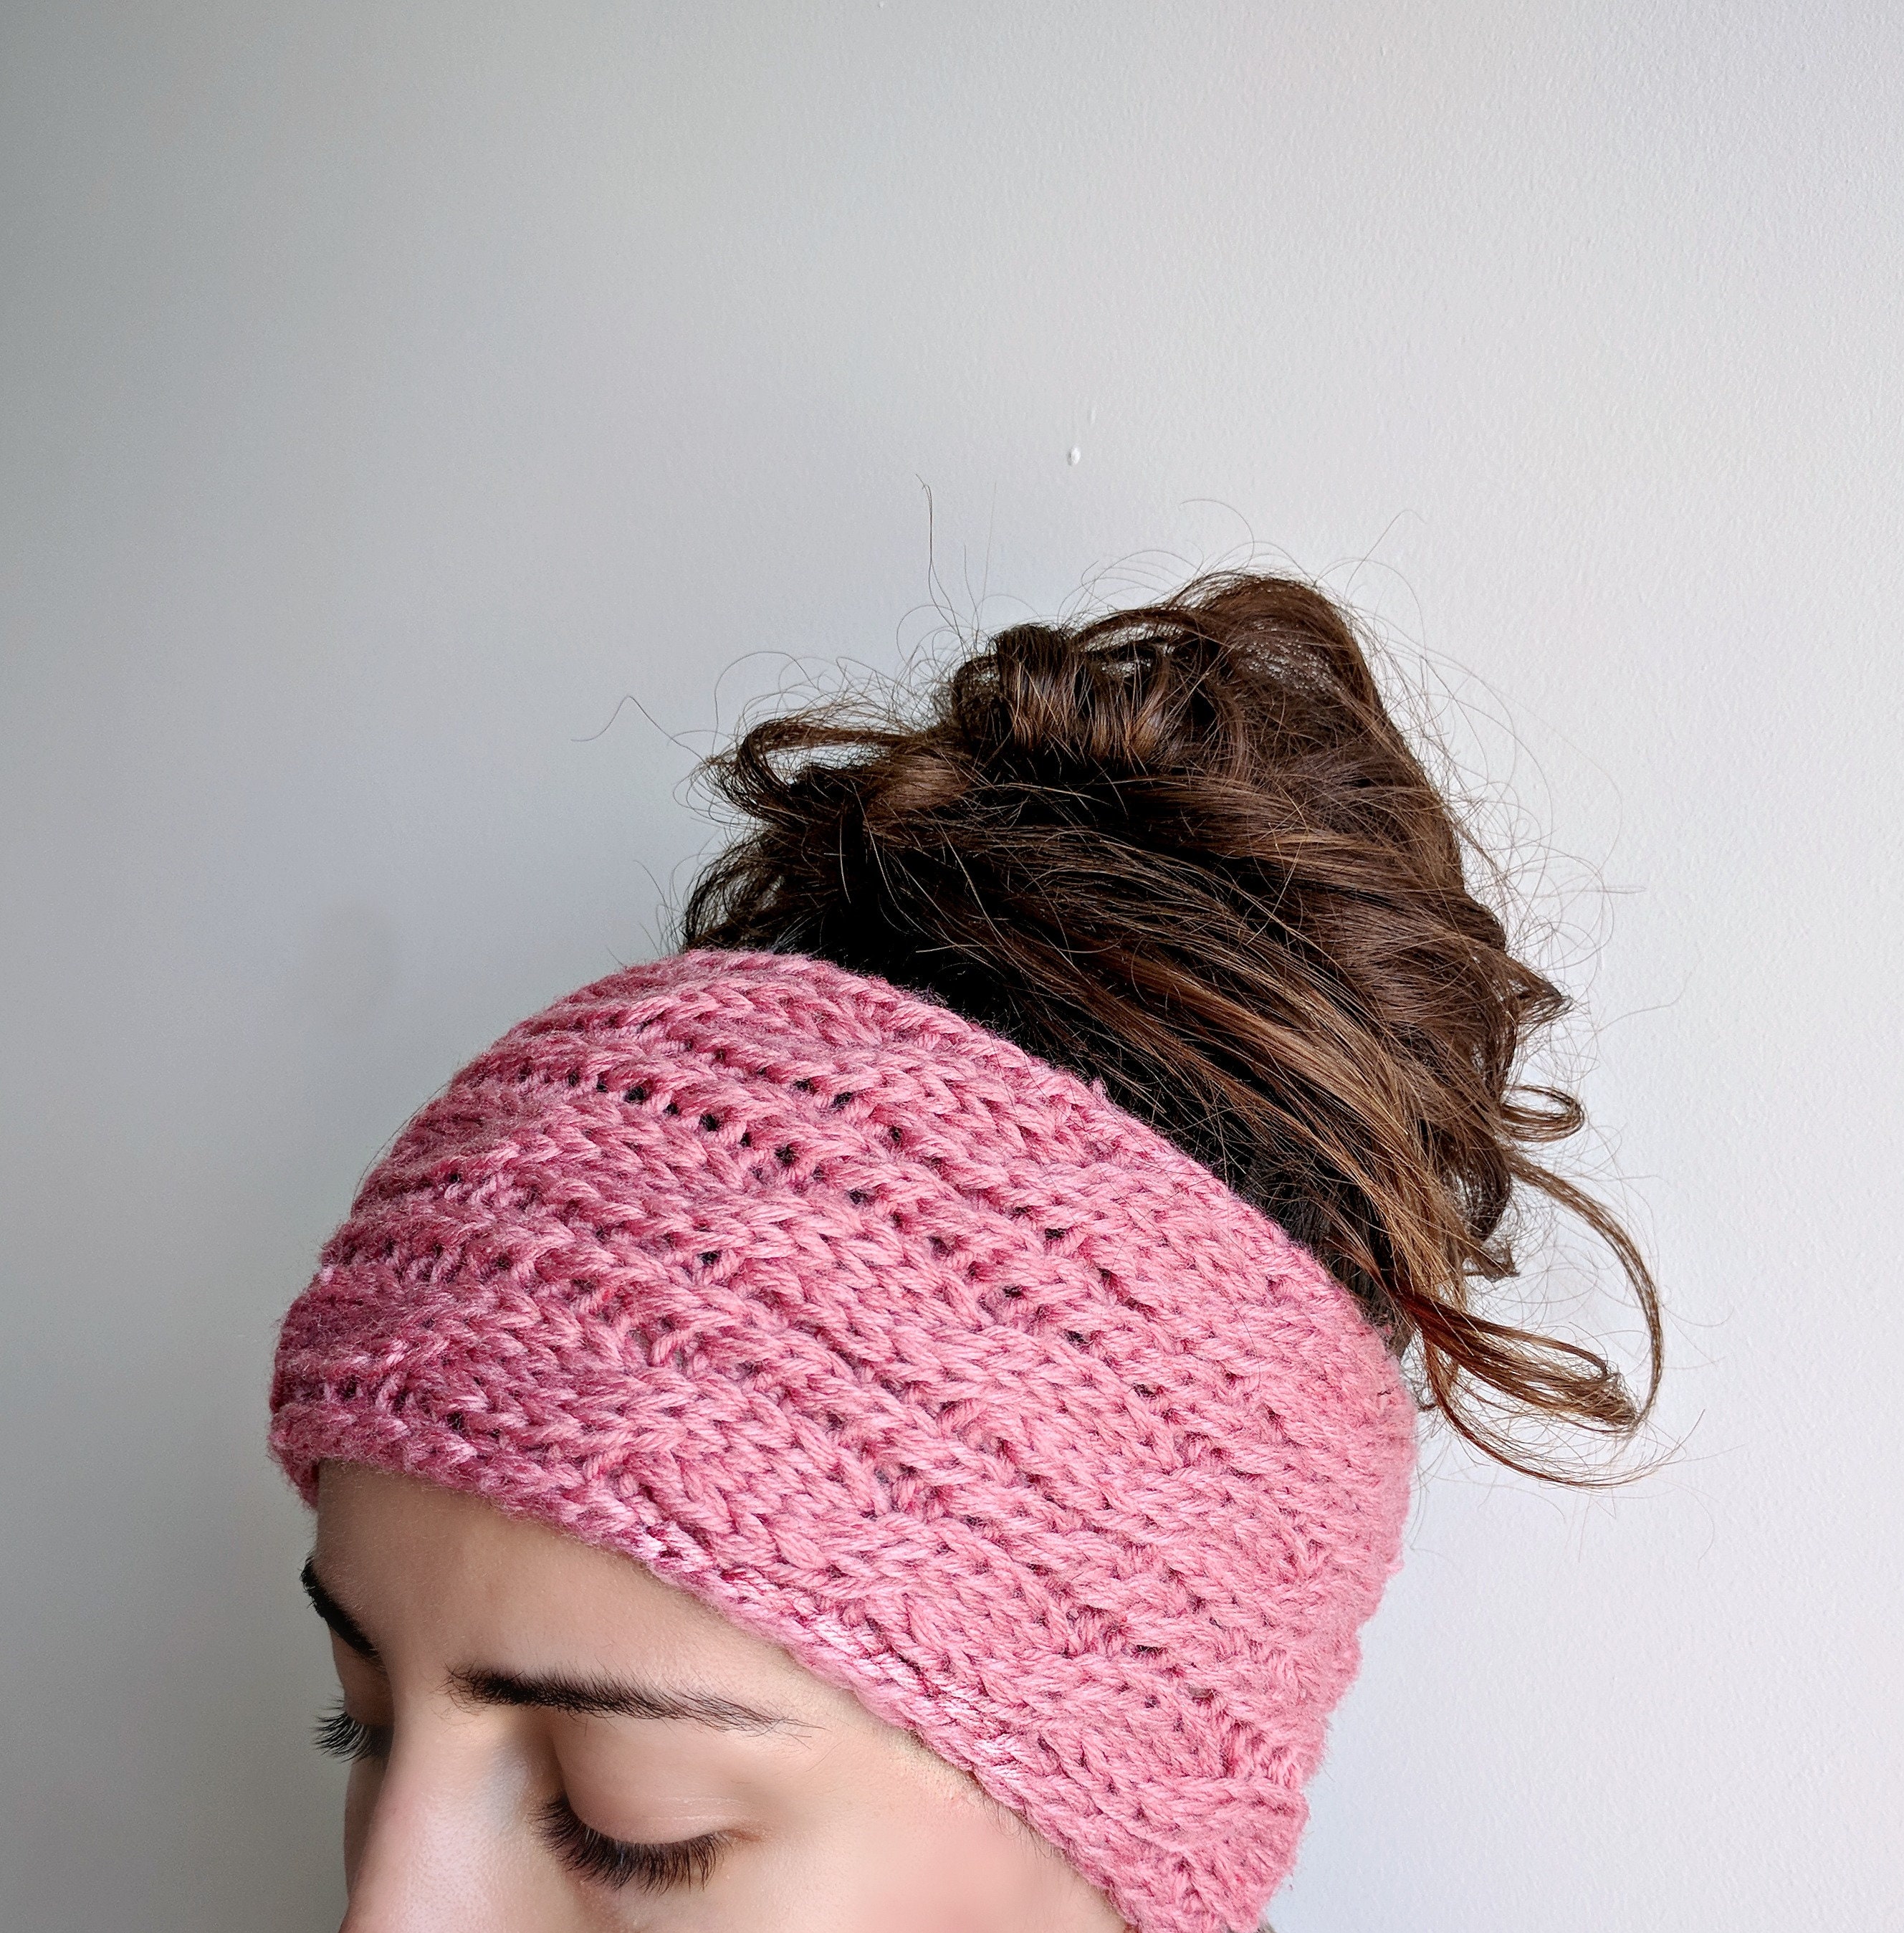 Turban Style Headband – Twist Front Knit Ear Warmer Pattern – The Snugglery